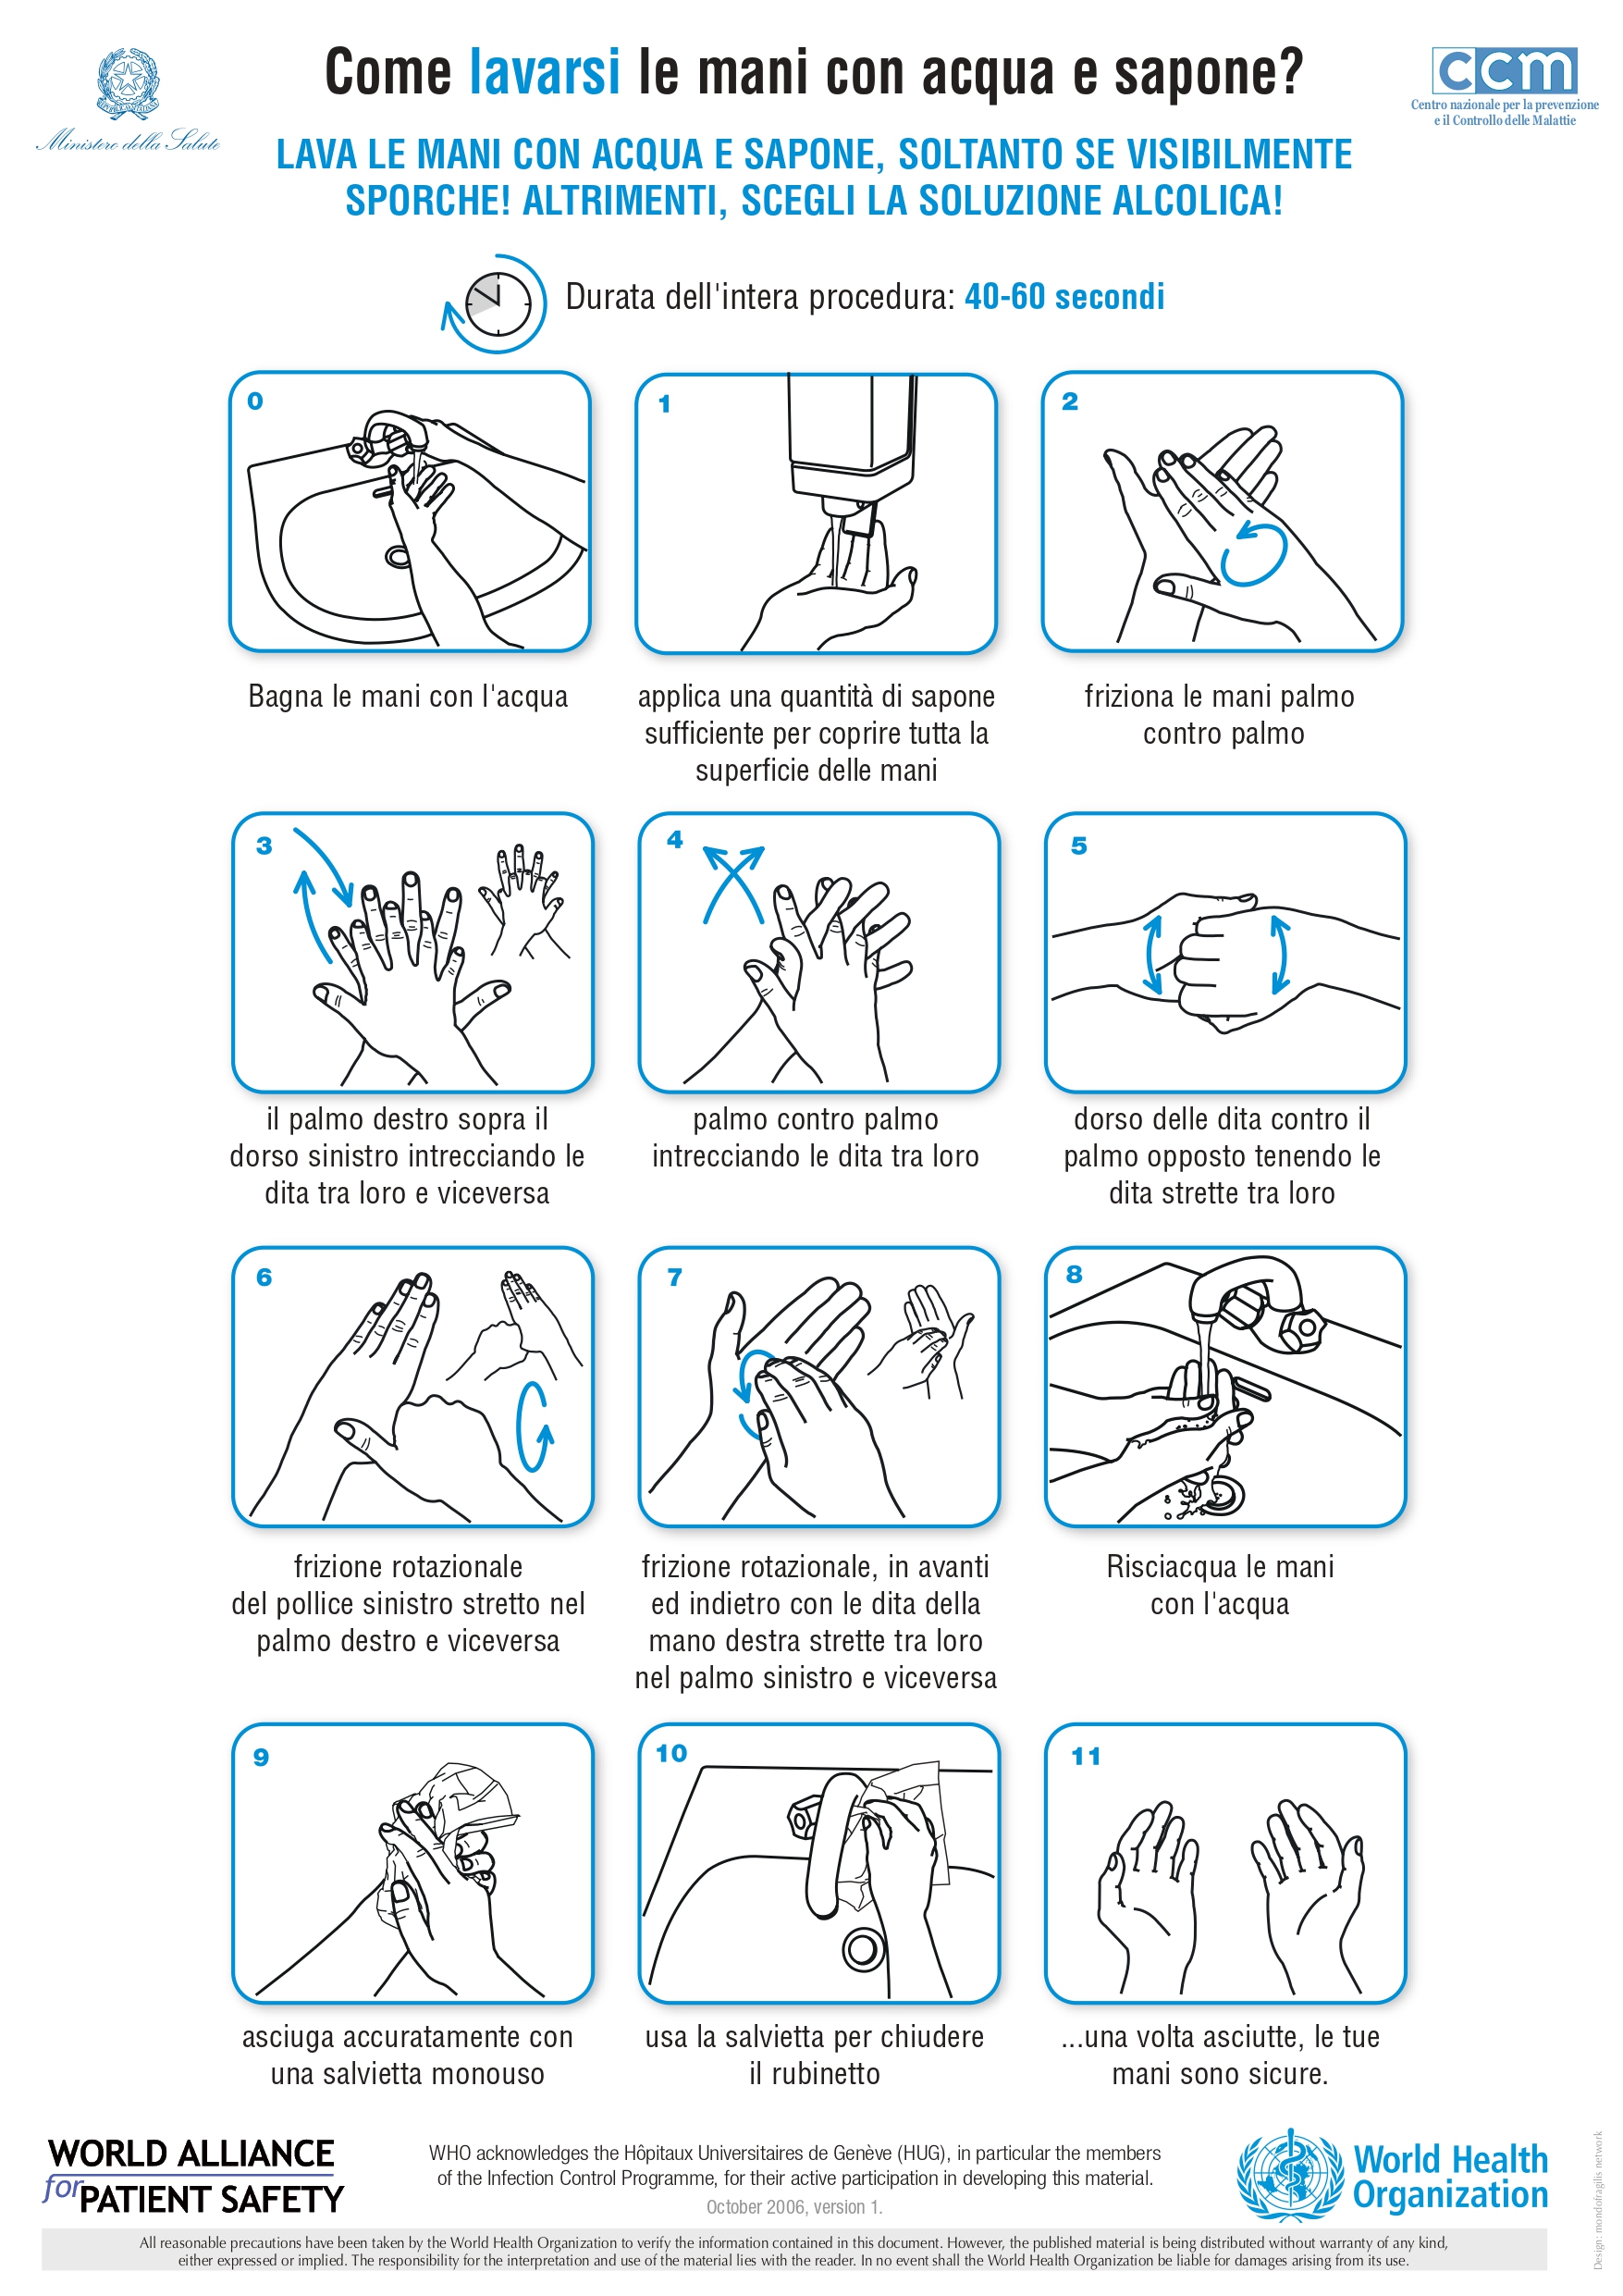 Come-lavare-mani-acqua-e-sapone-coronavirus